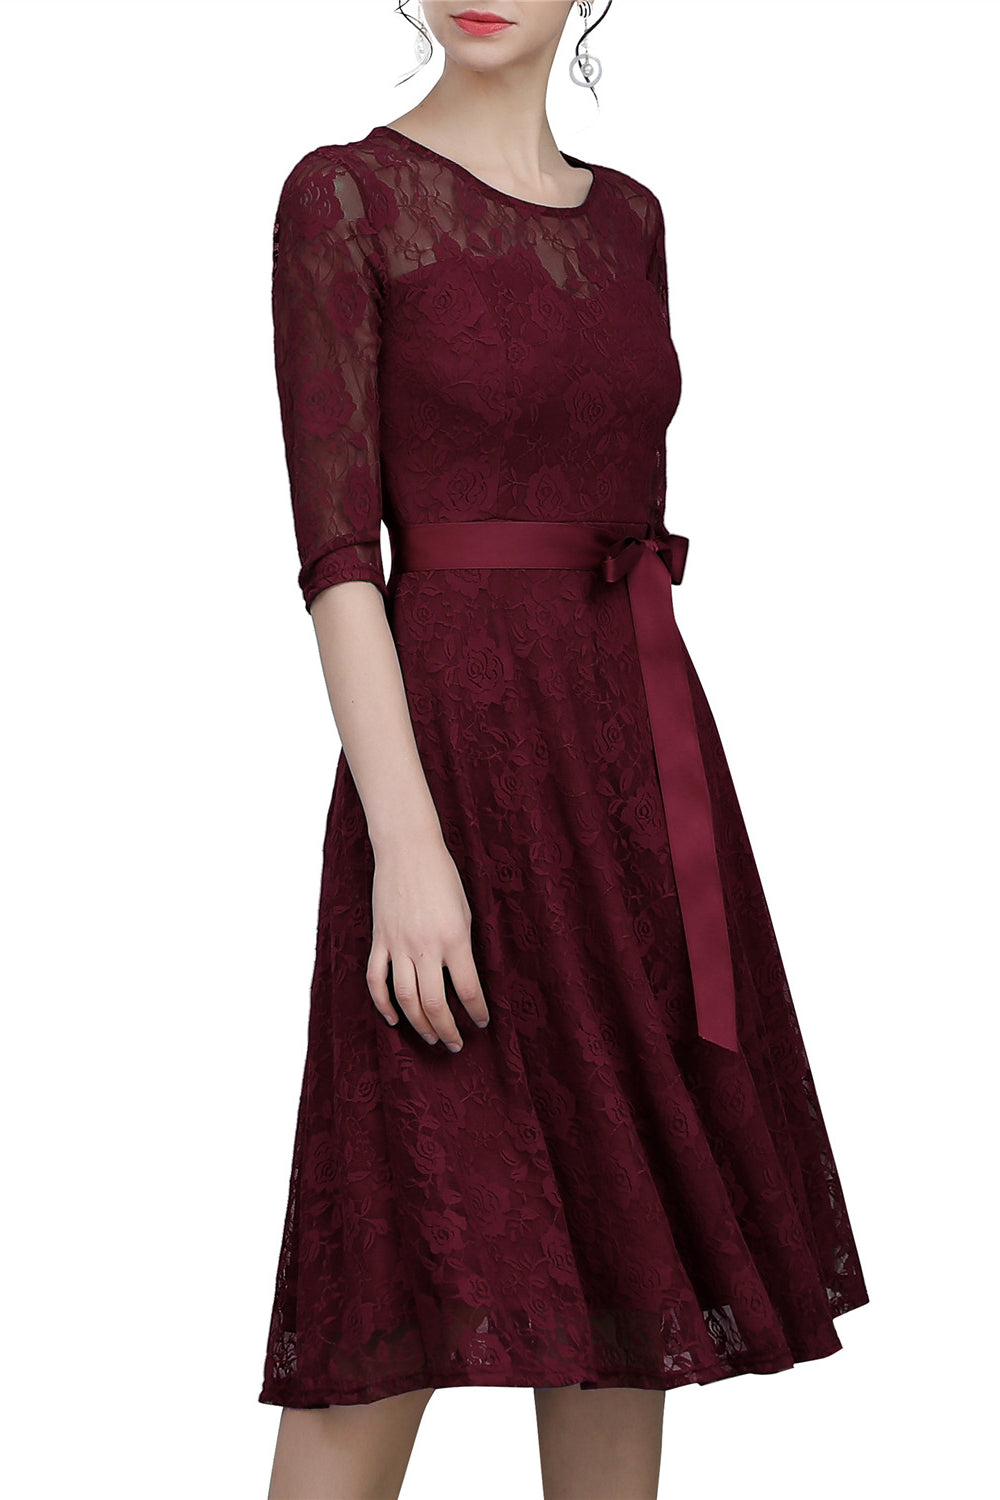 Burgundy Sash Lace Dress